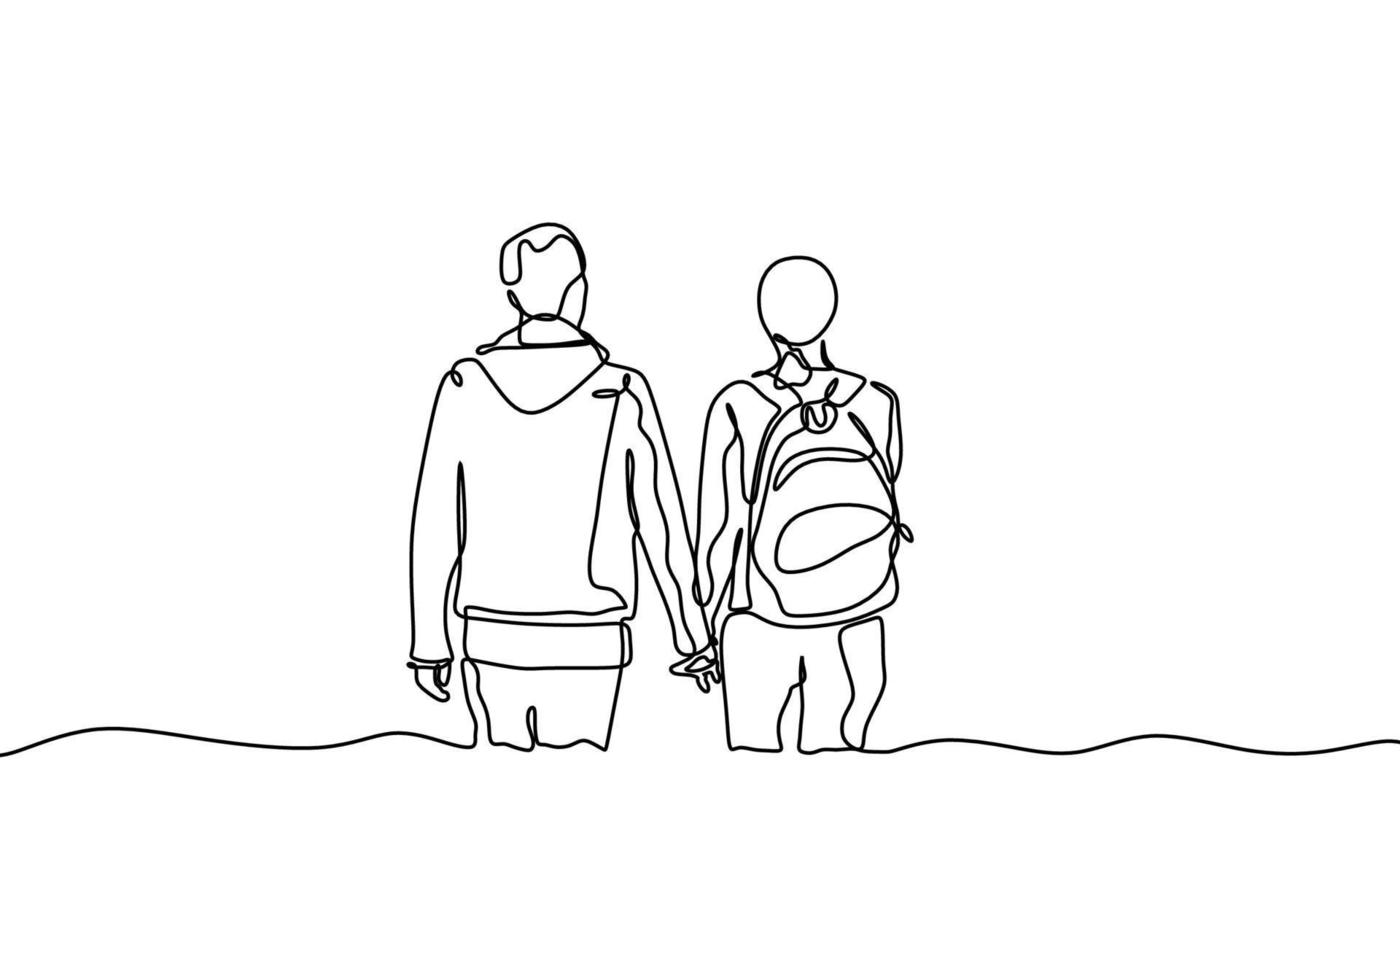 dibujo continuo de una línea de pareja tomándose de la mano. concepto de romántico y acto de bondad. vector